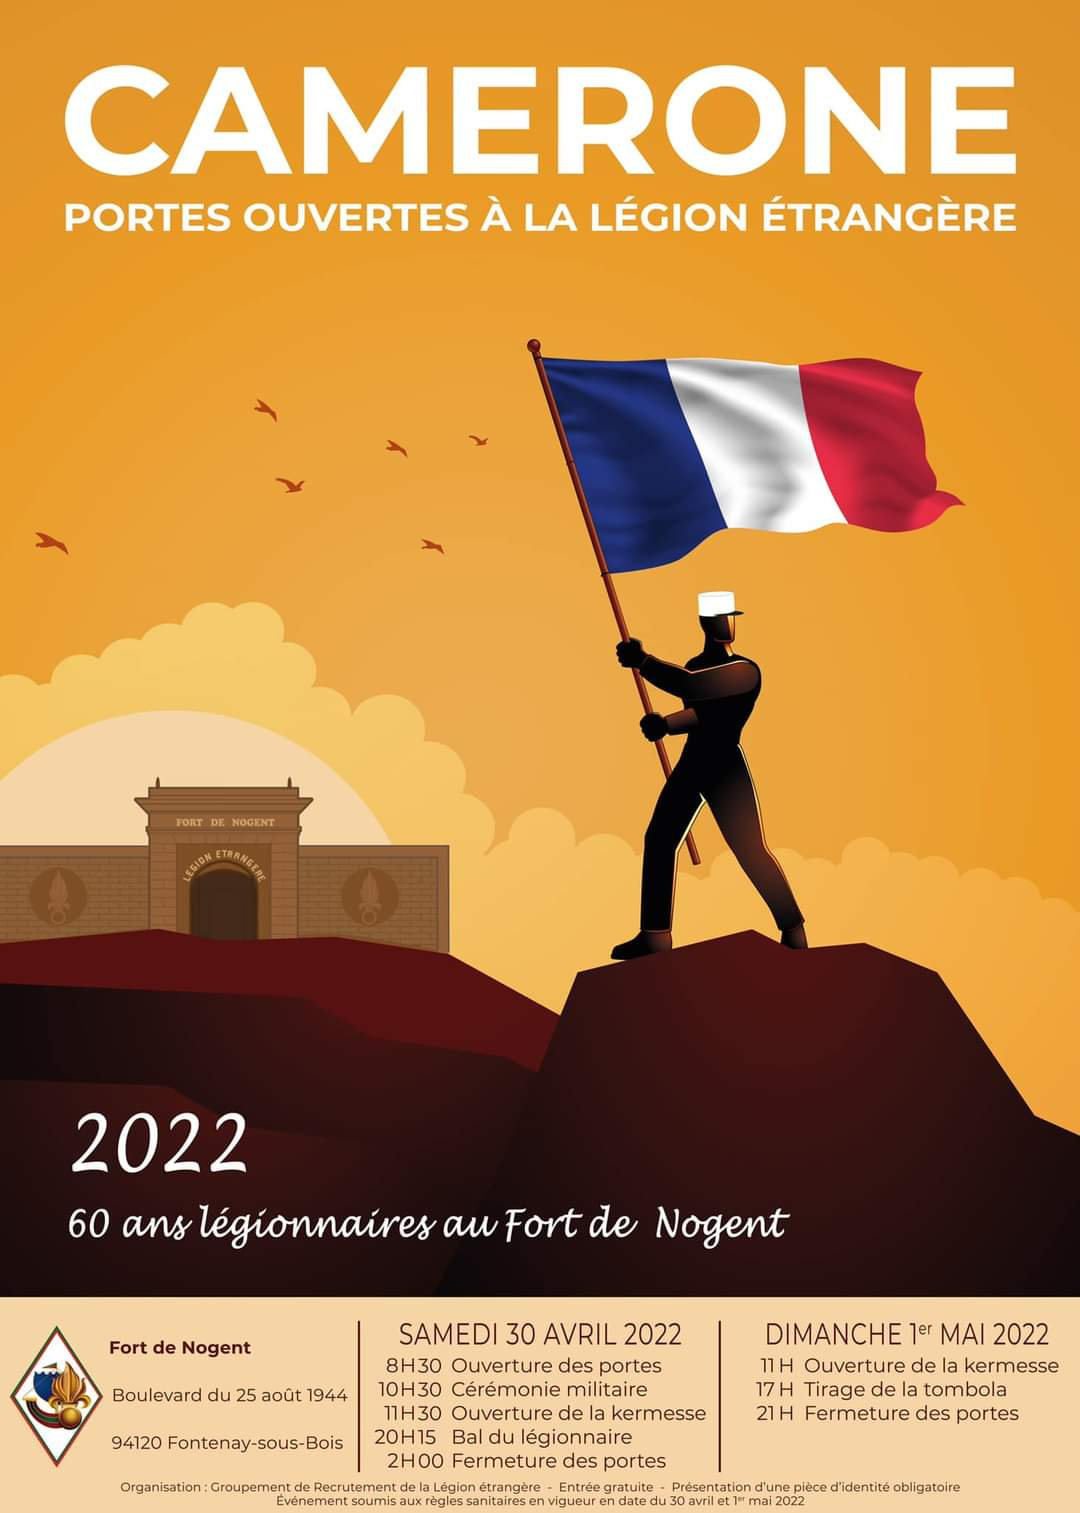 Kermesse, bal et démonstrations : la Légion étrangère fête Camerone à  Castelnaudary